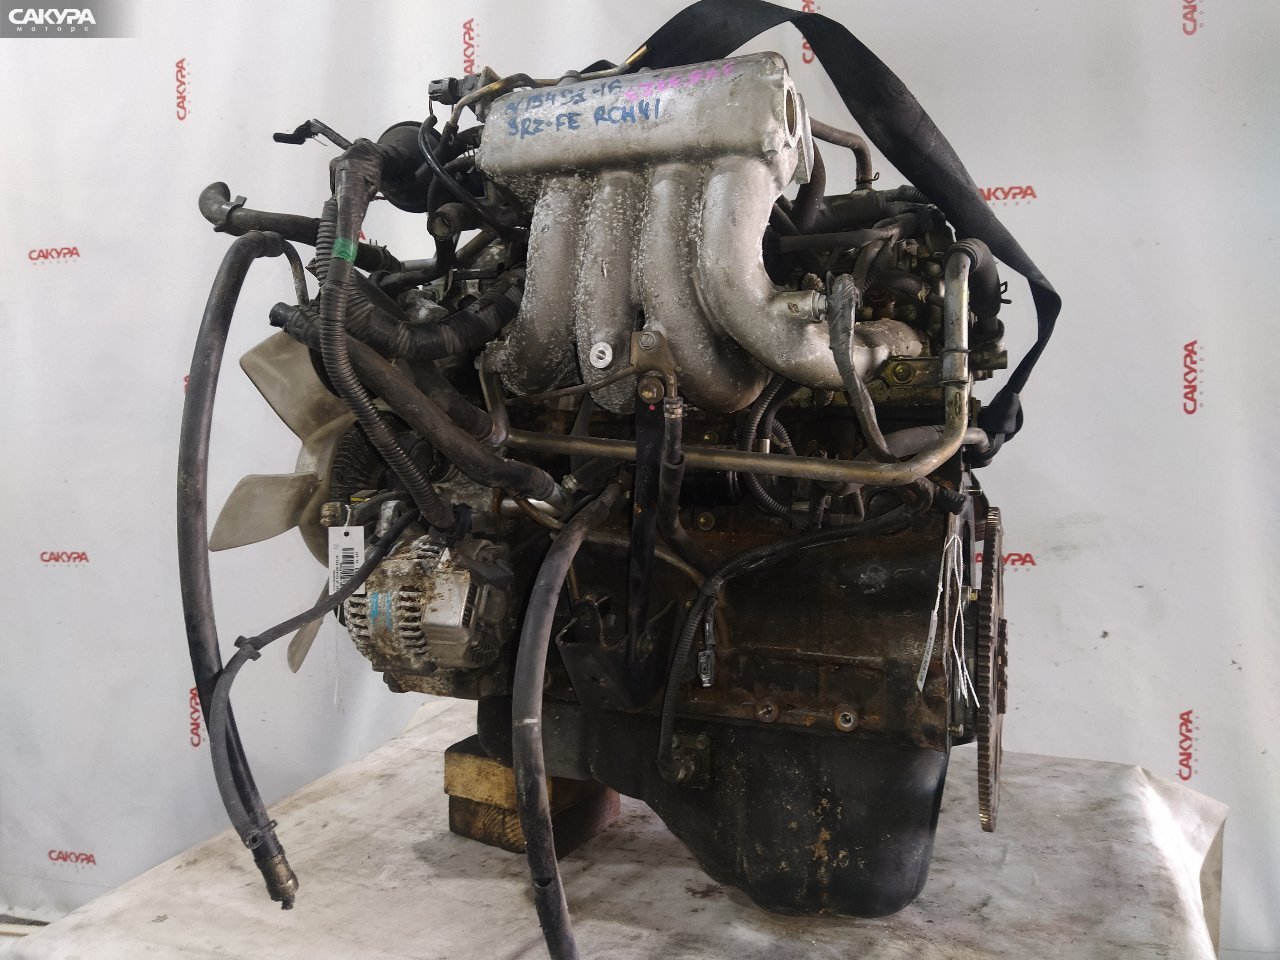 Двигатель Toyota Regius RCH41W 3RZ-FE: купить в Сакура Красноярск.